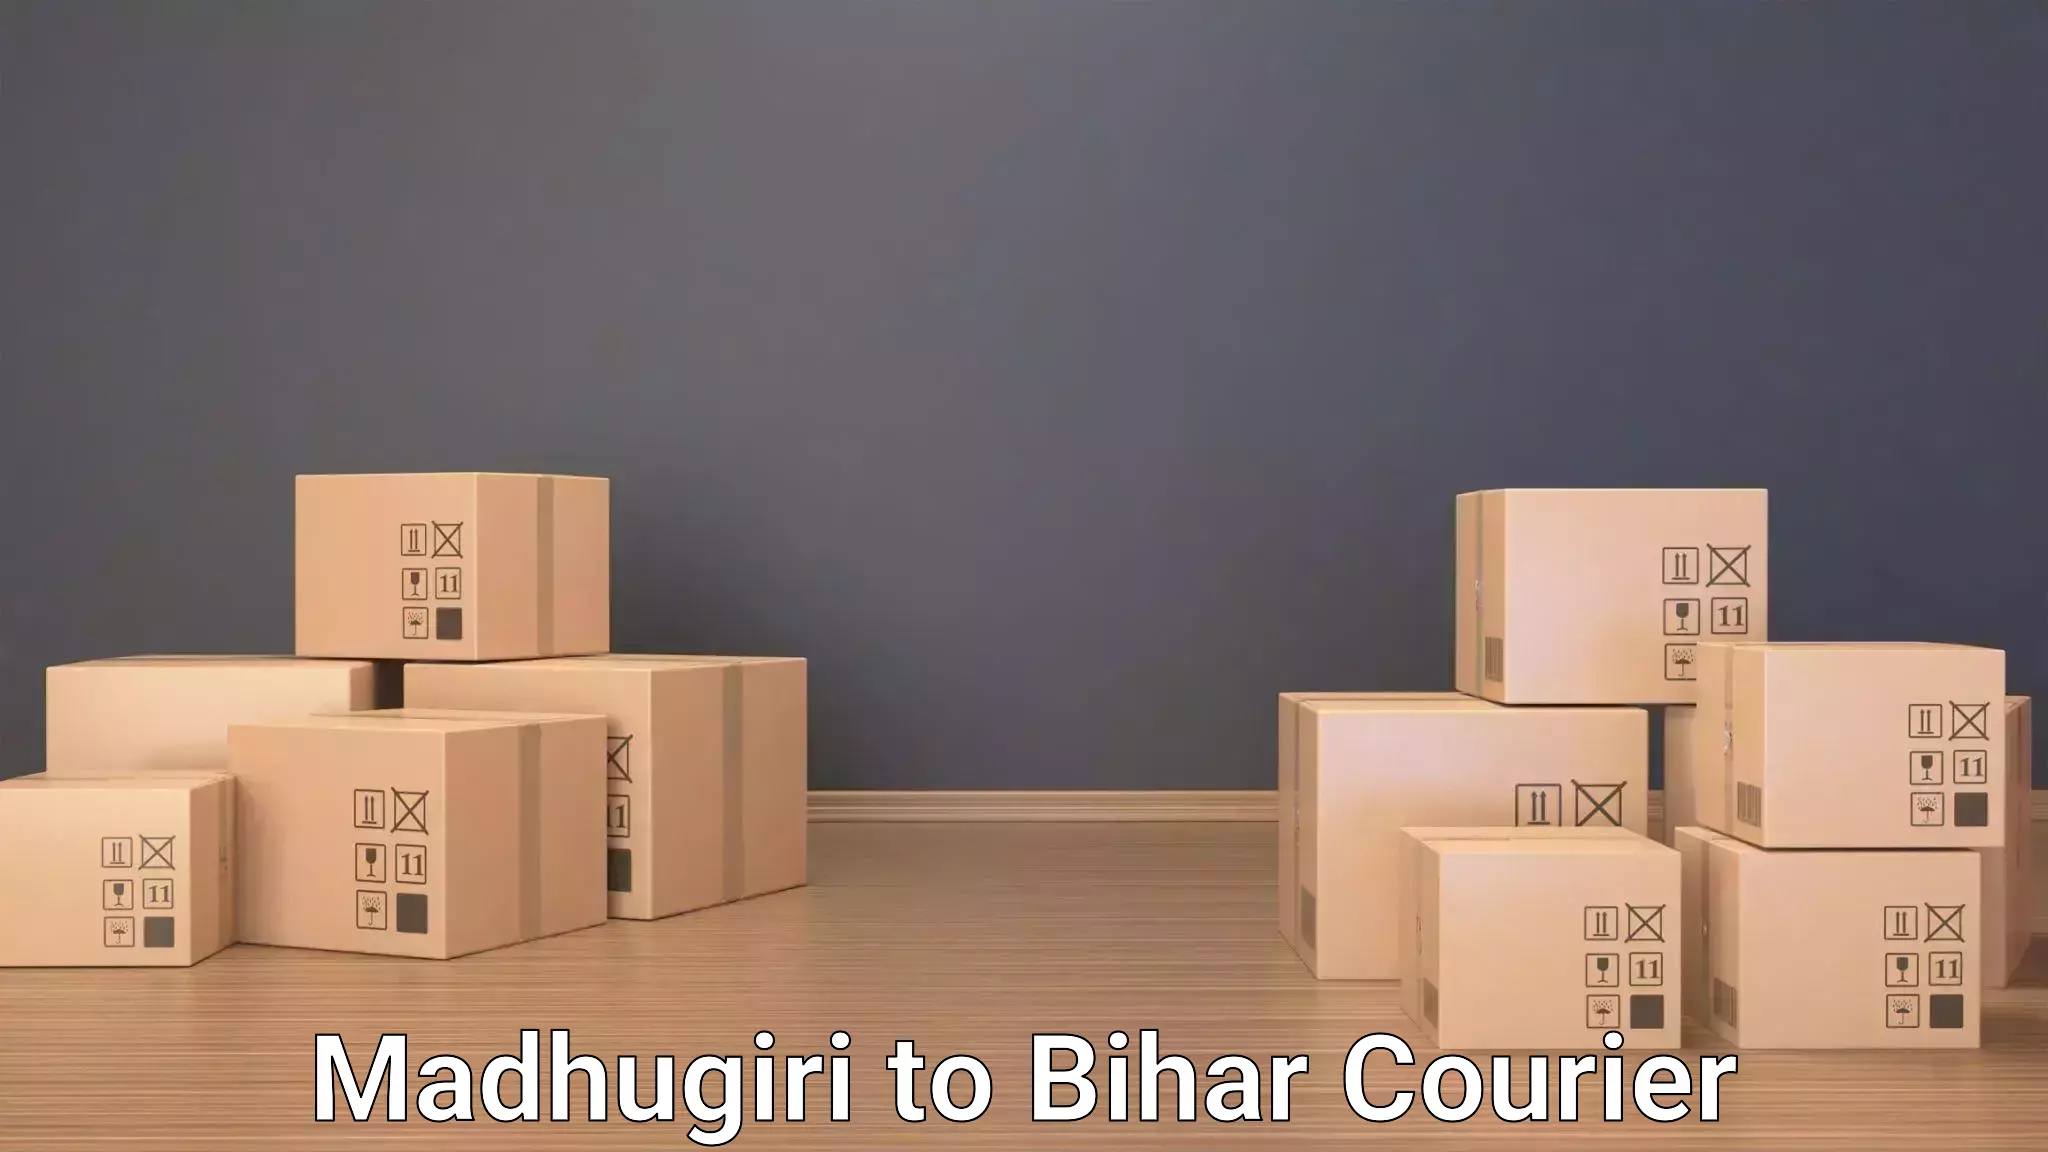 Luggage shipment tracking in Madhugiri to Biraul